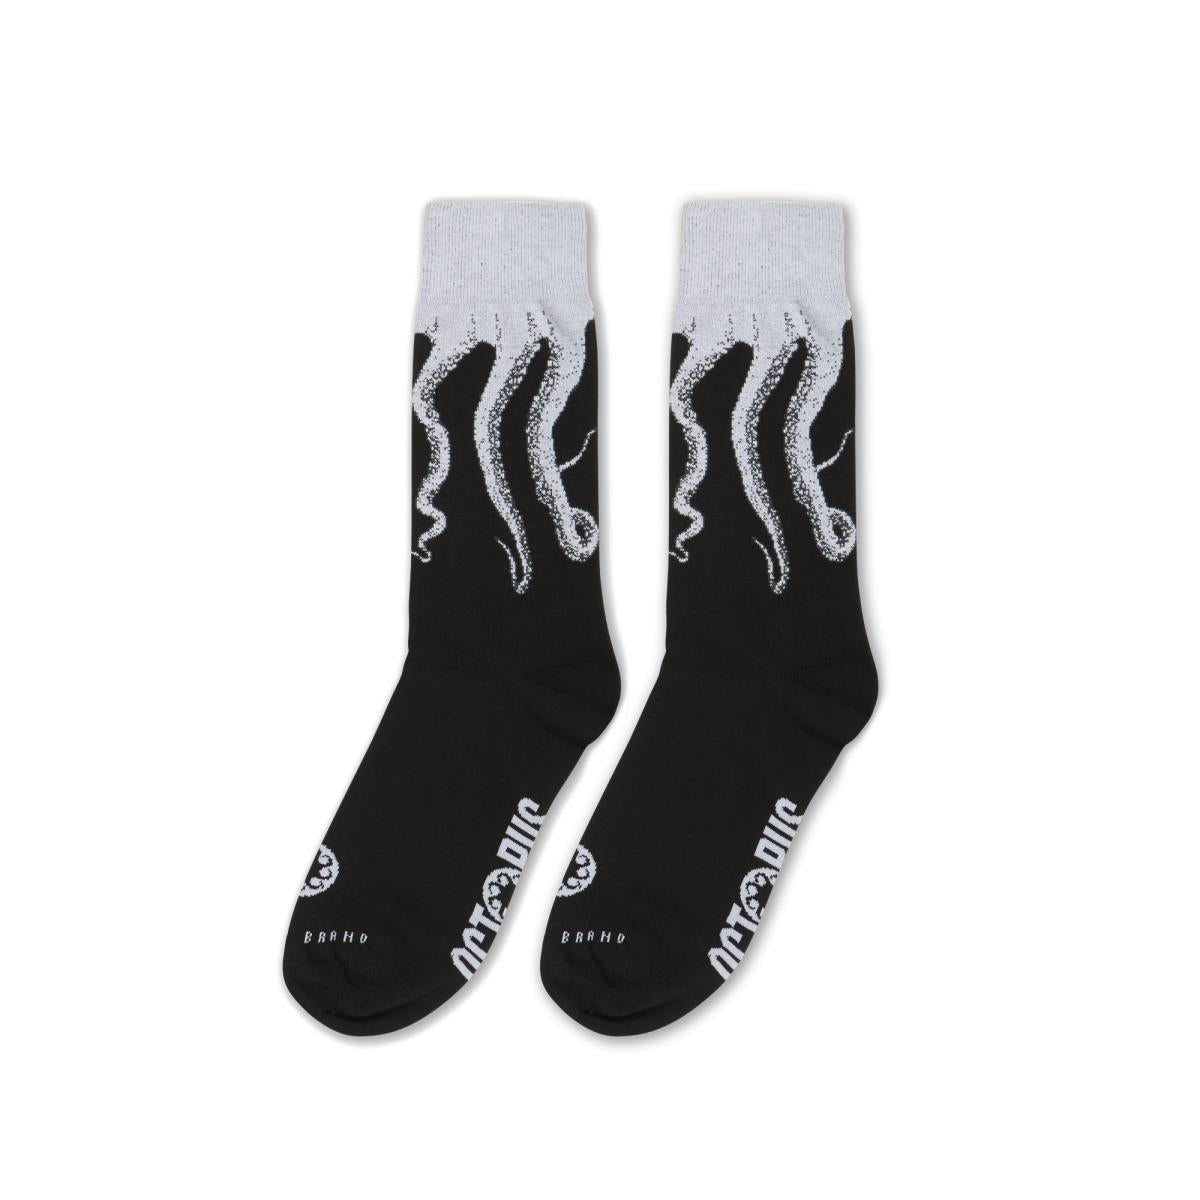 Original Socks